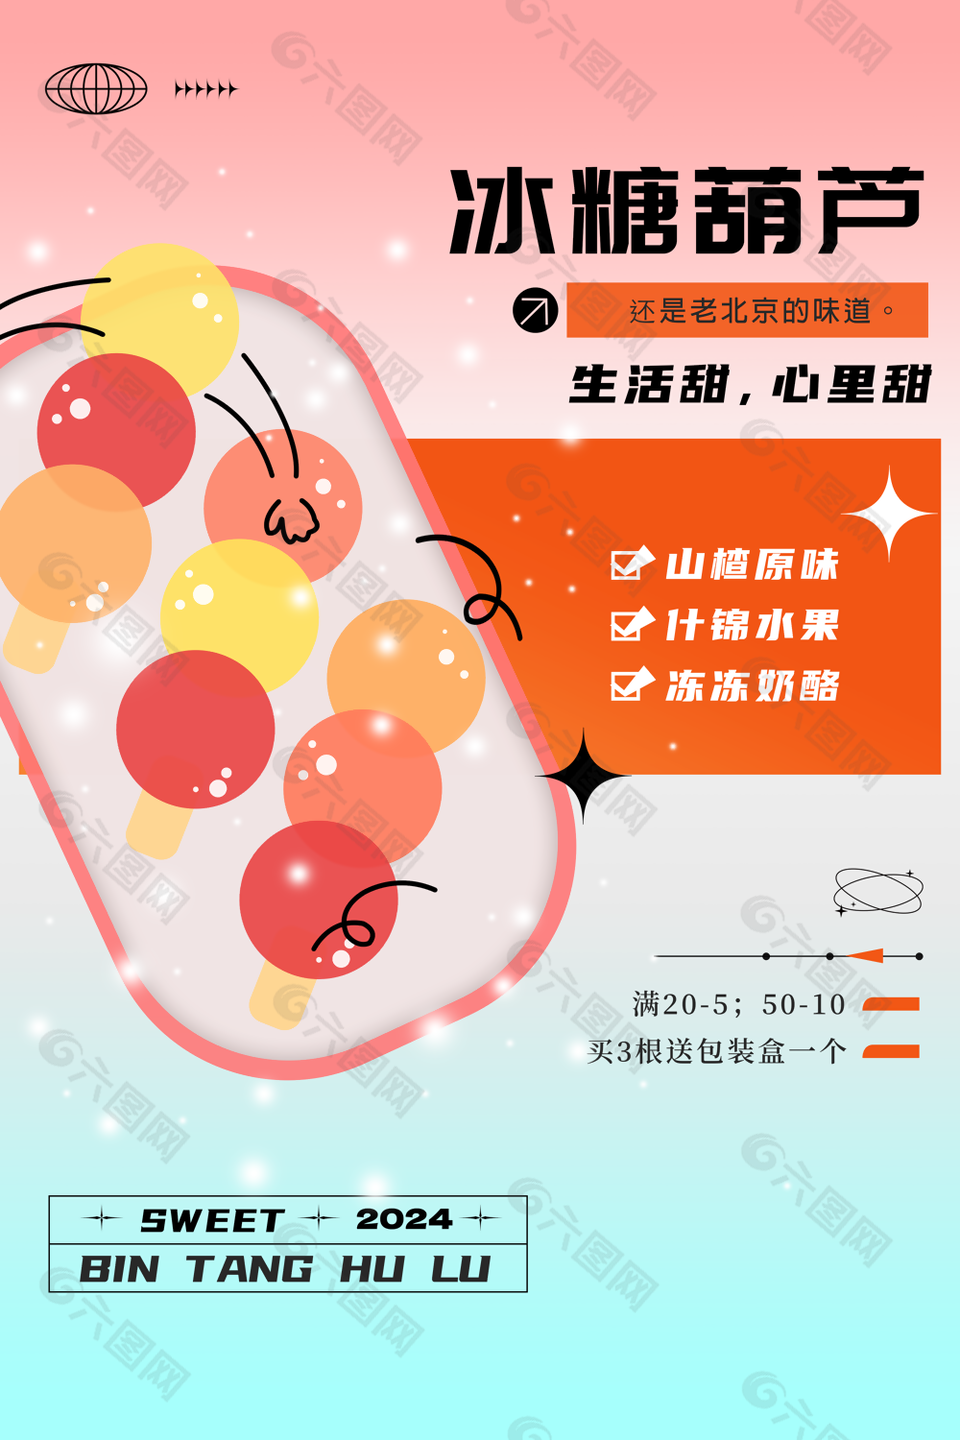 清新手绘老北京味道冰糖葫芦海报设计